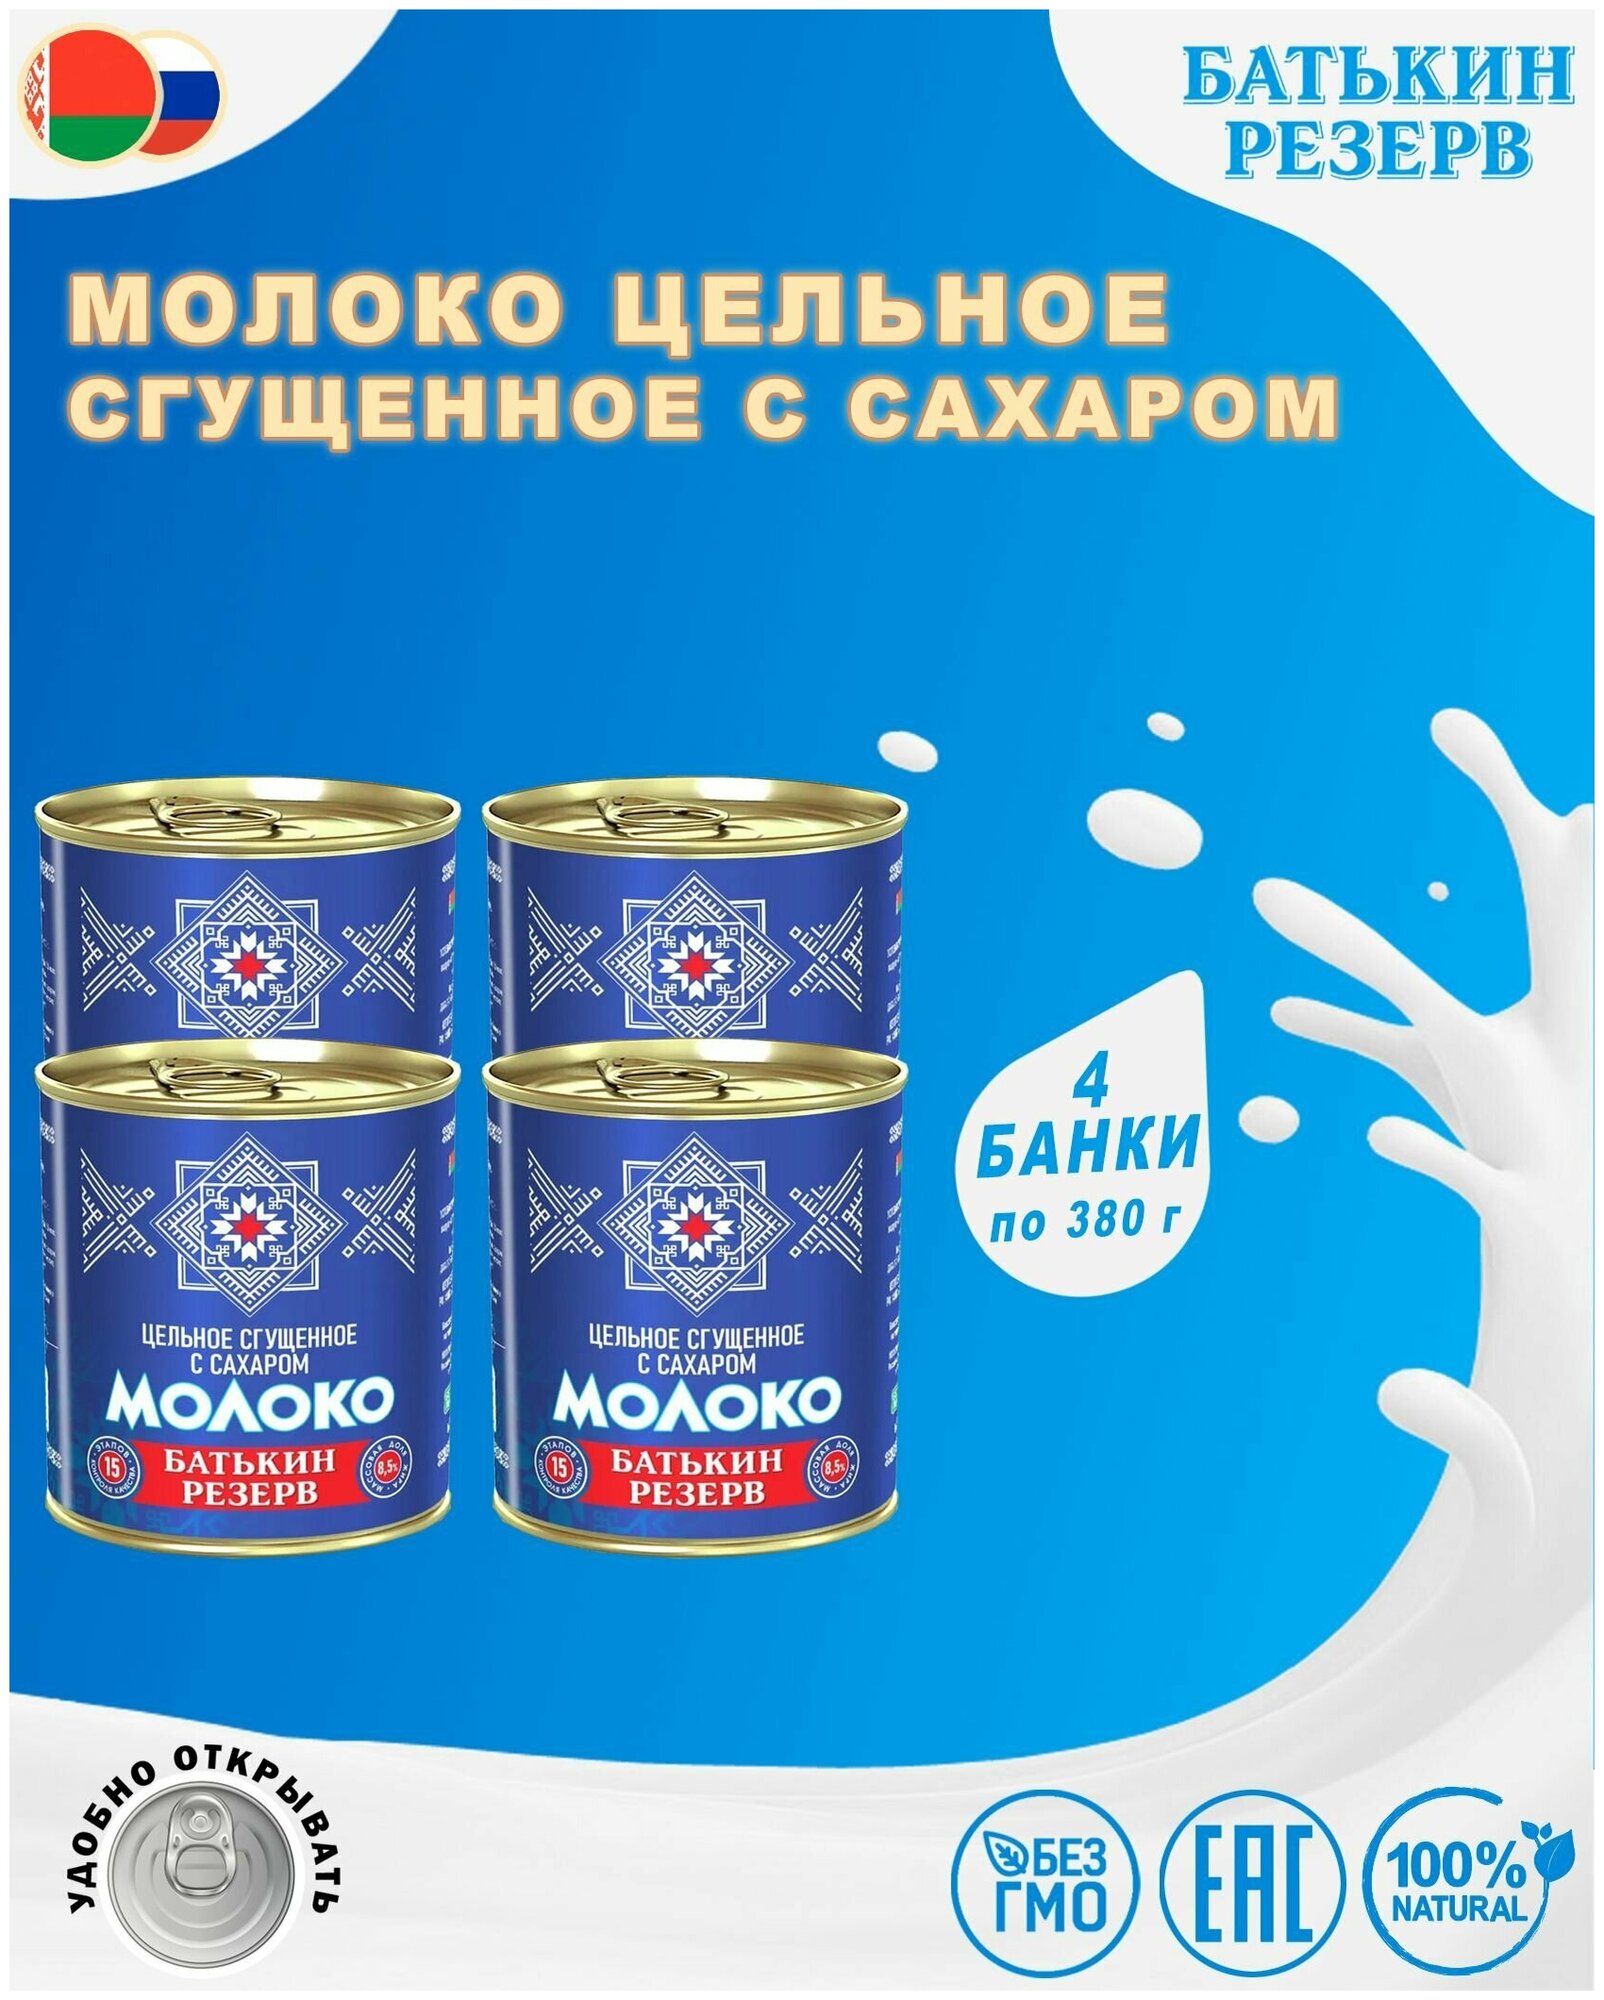 Молоко цельное сгущенное с сахаром, Батькин резерв, ГОСТ, 4 шт. по 380 г